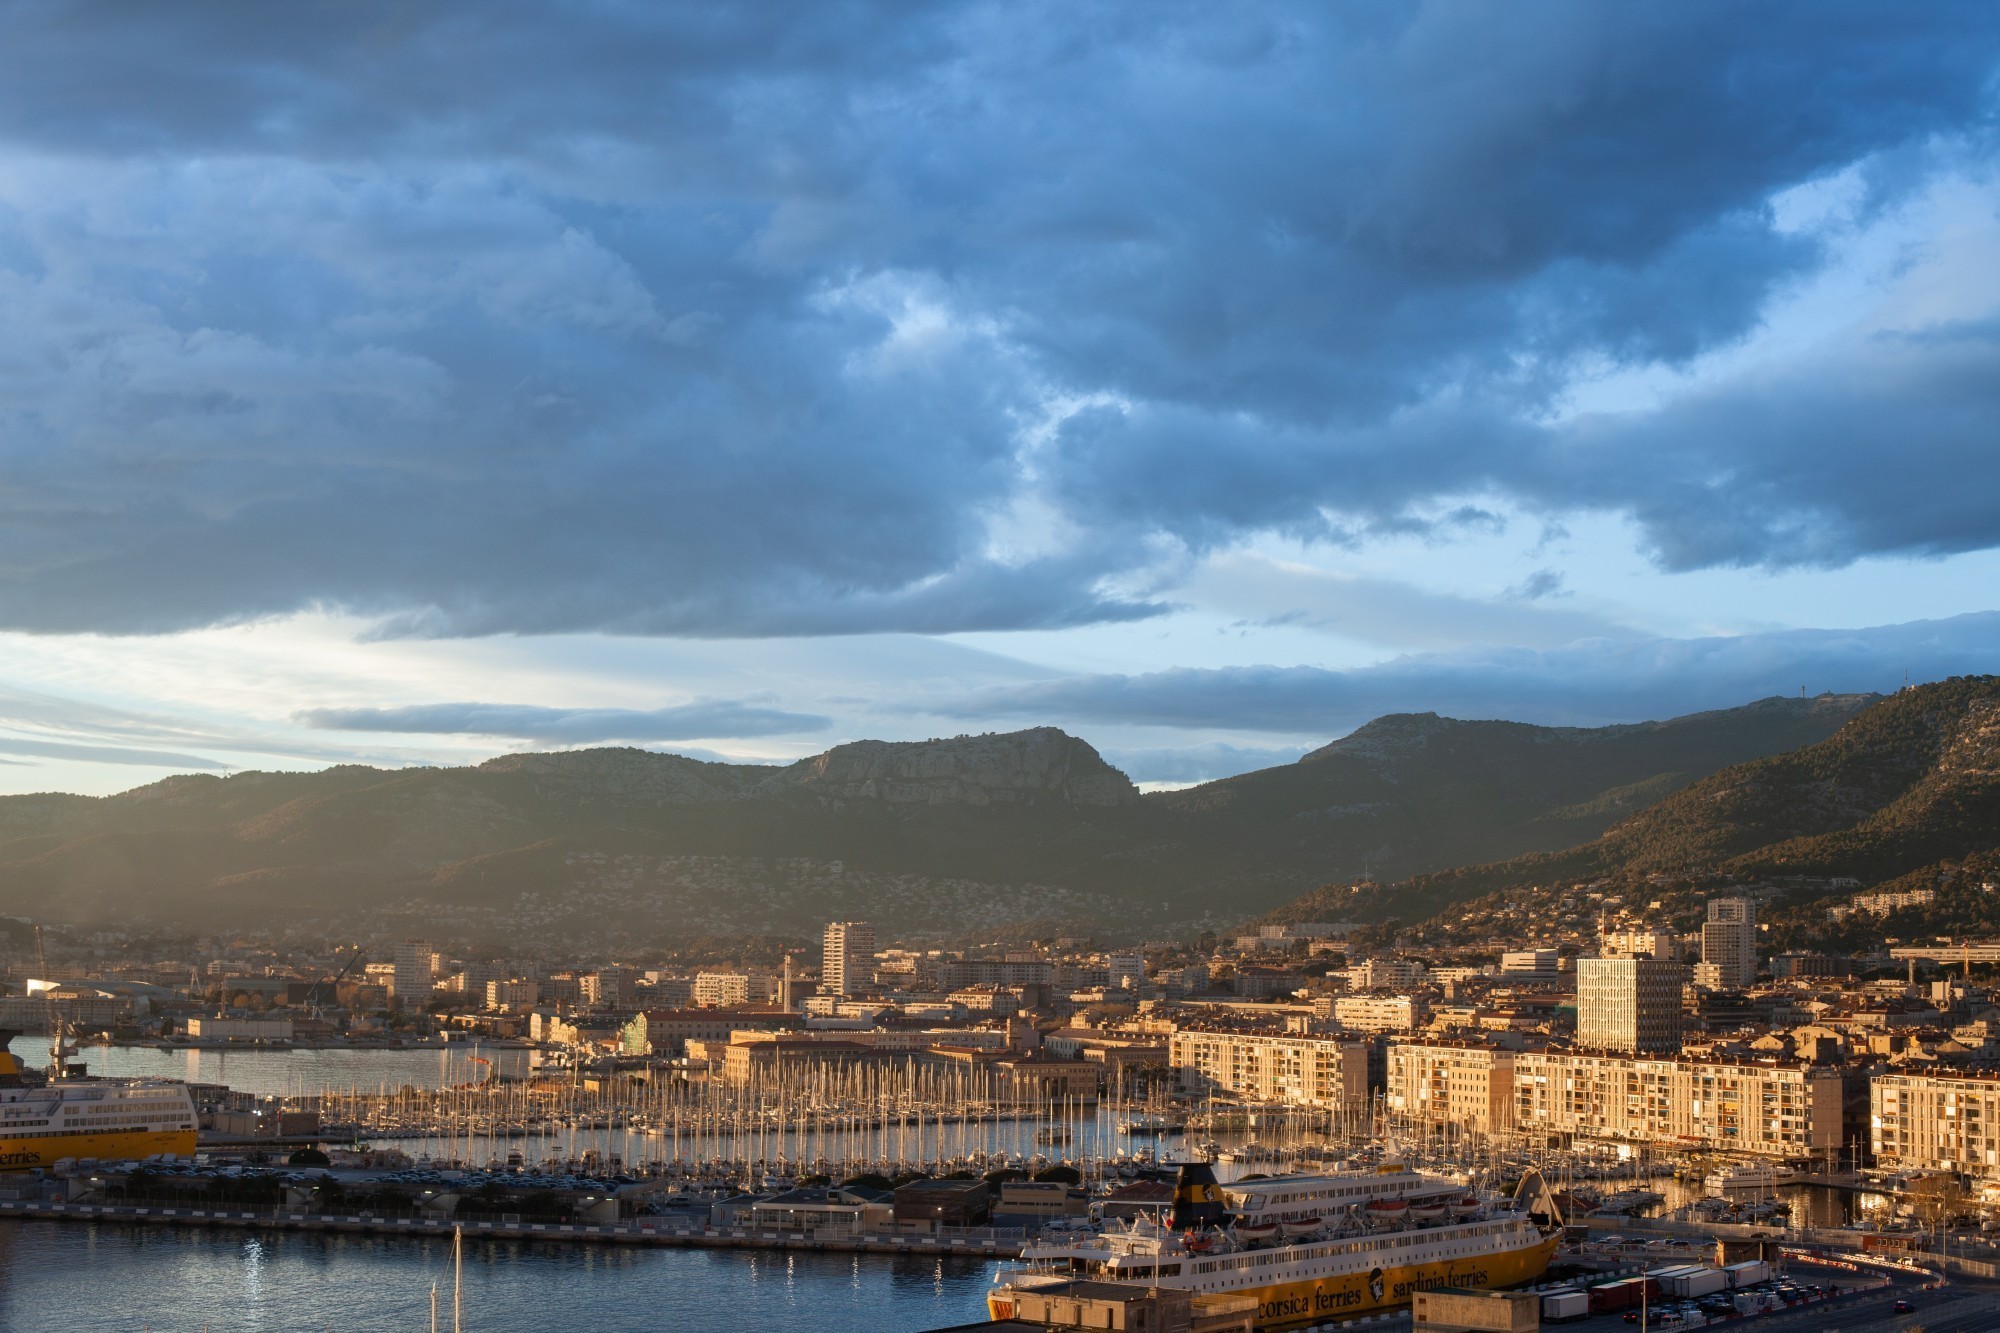 ABB remporte un contrat permettant de fournir de l'électricité aux bateaux séjournant dans le port de Toulon.